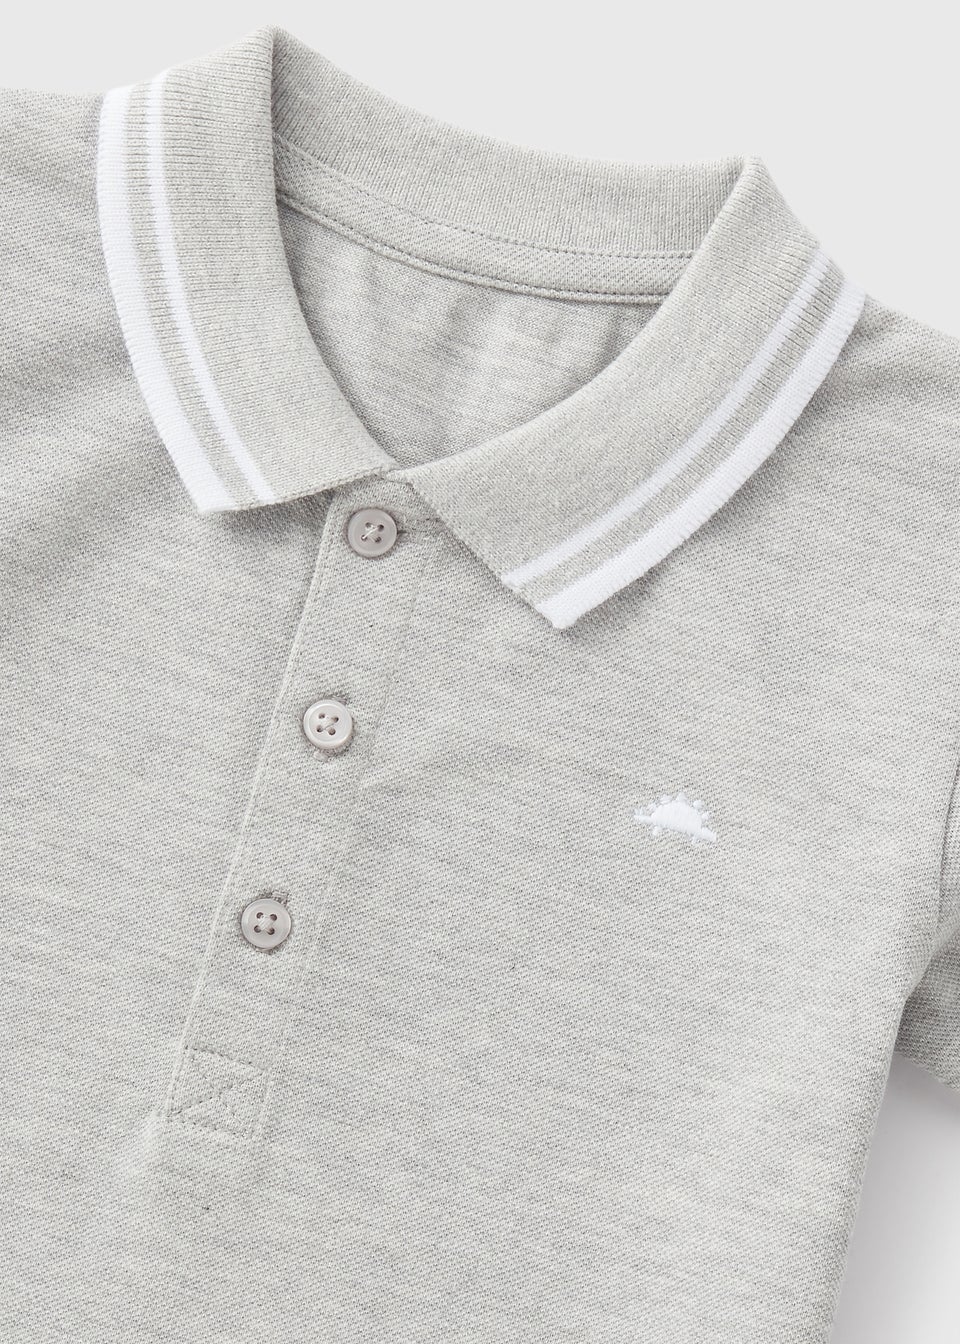 Boys Grey Marl Polo Shirt (1-7yrs)